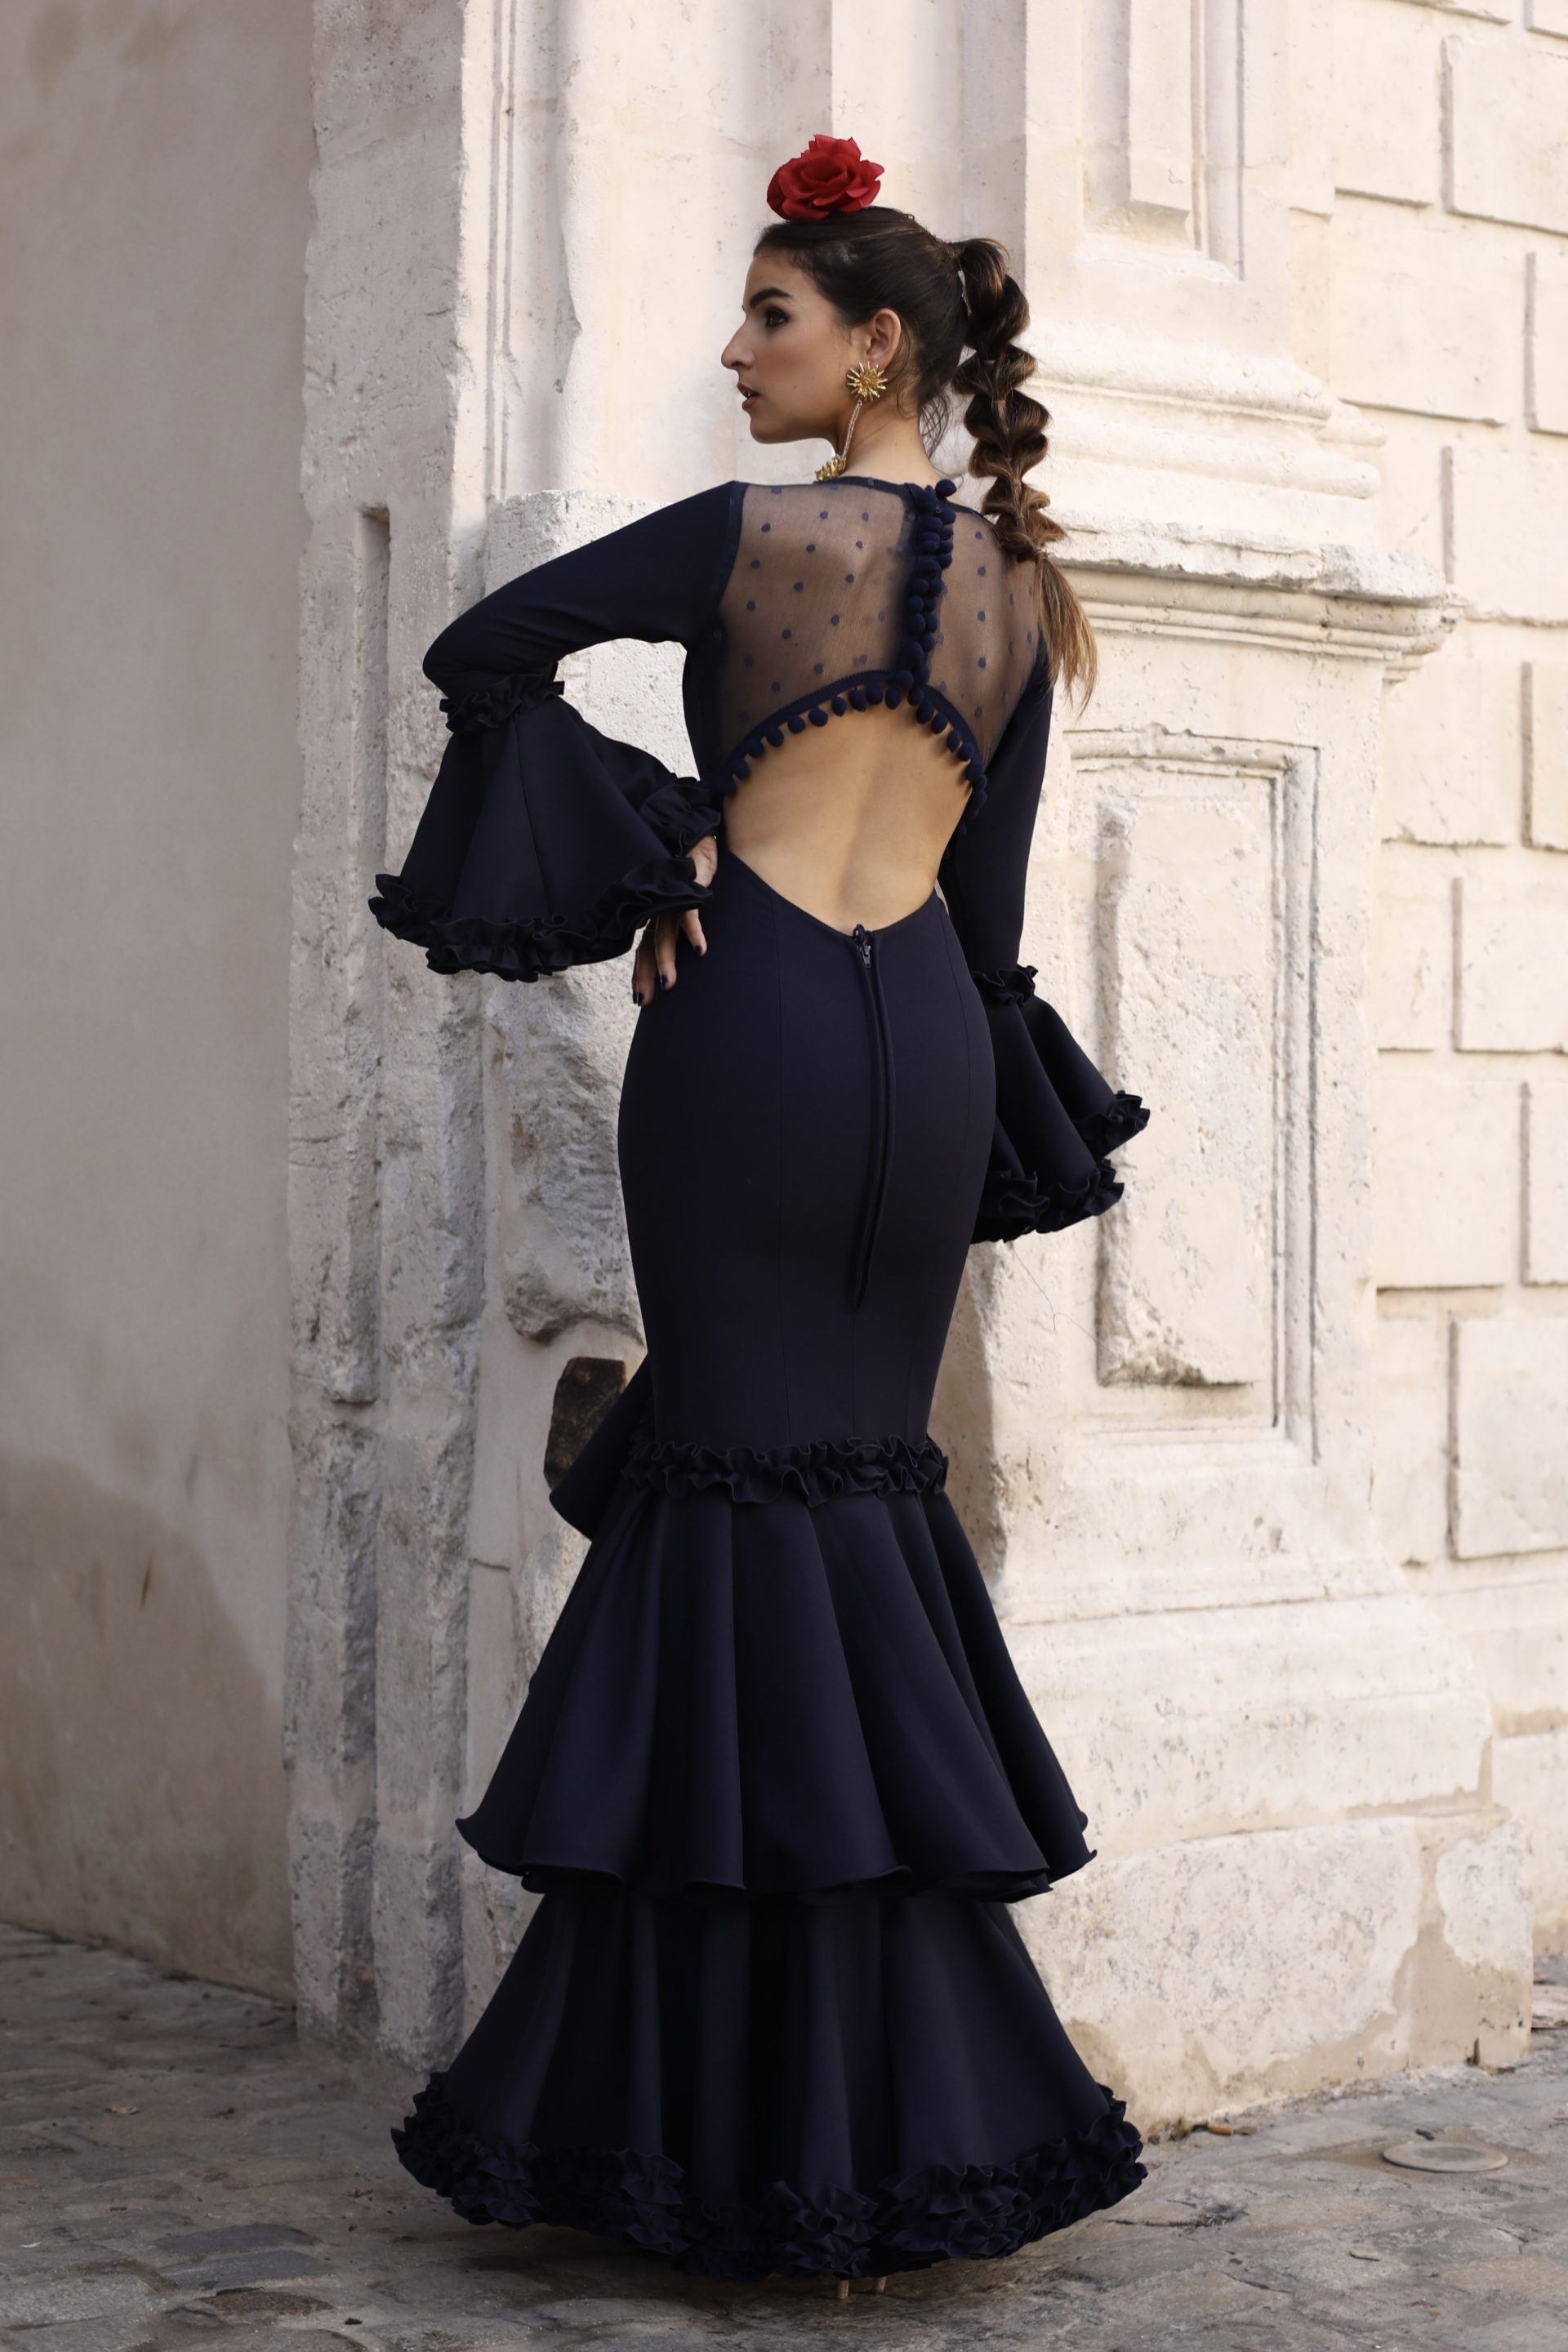 Vestido de flamenca - Trajes de Gitanadel 2022 - El Rocio